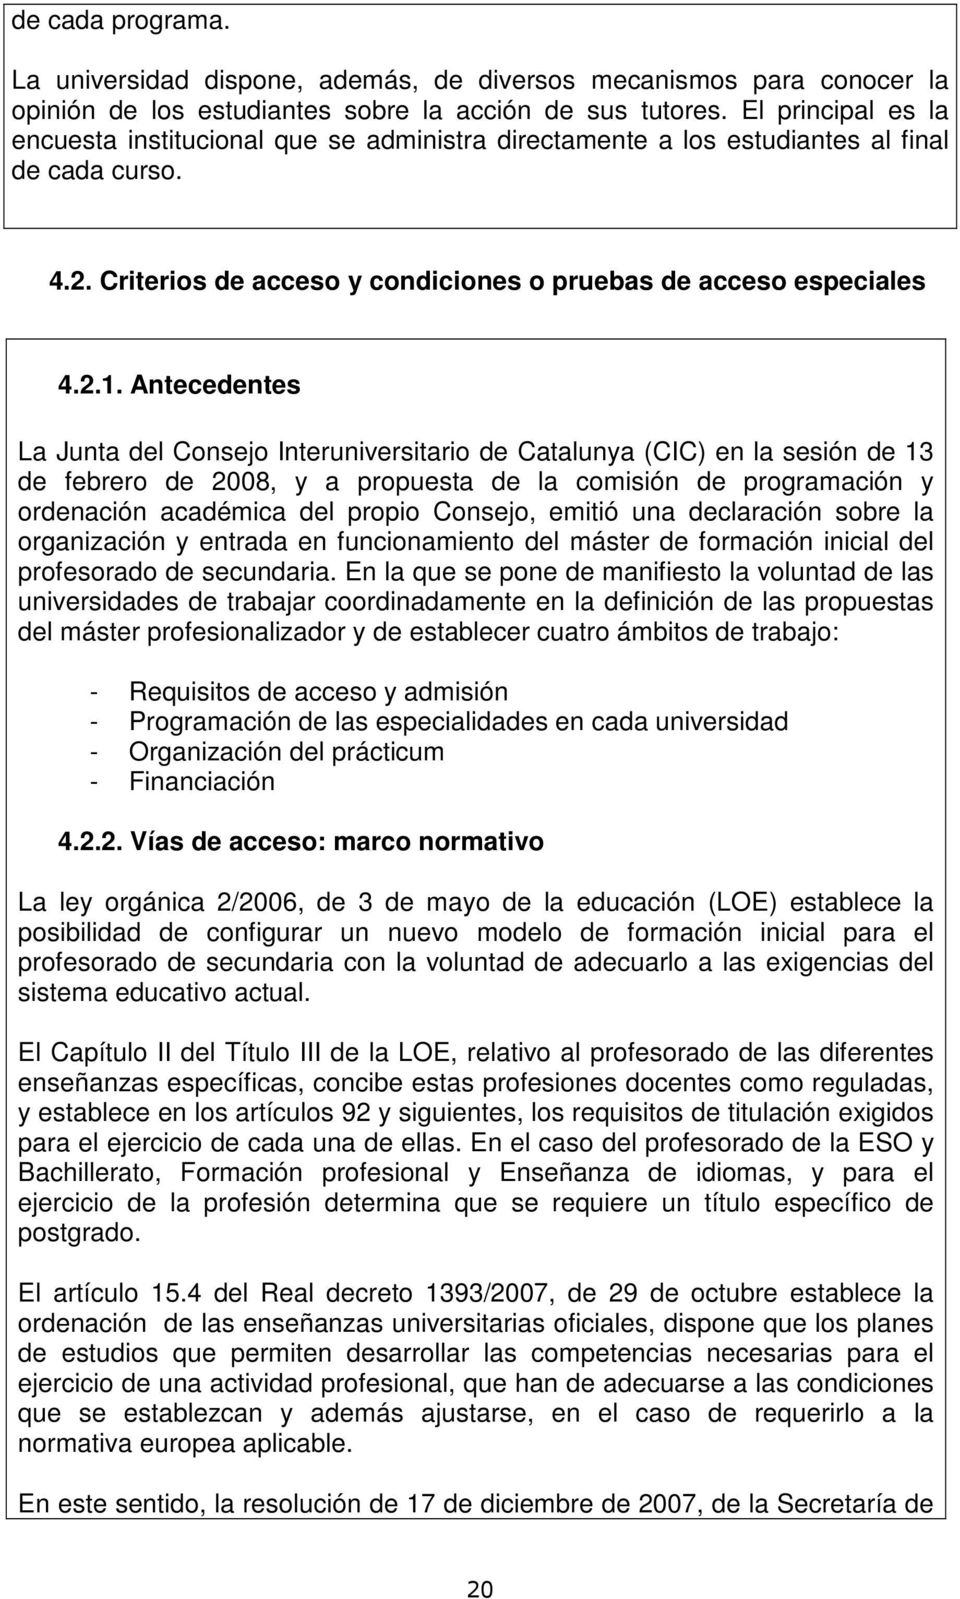 Antecedentes La Junta del Consejo Interuniversitario de Catalunya (CIC) en la sesión de 13 de febrero de 2008, y a propuesta de la comisión de programación y ordenación académica del propio Consejo,